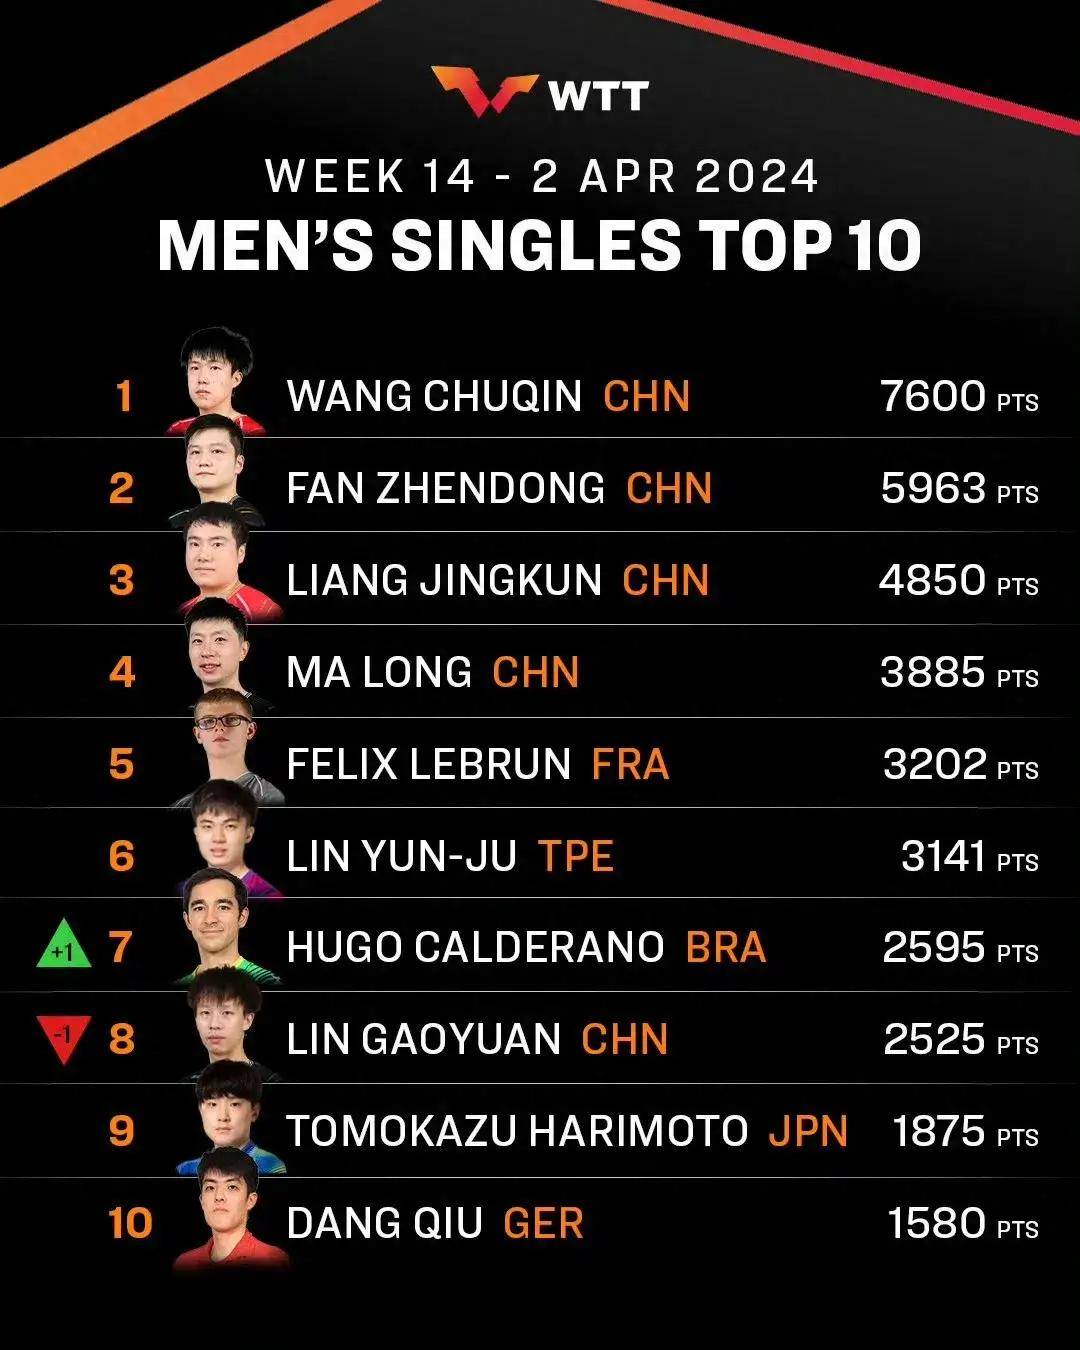 在男子单打排名中,中国选手王楚钦稳坐榜首,他的出色表现使得其他选手